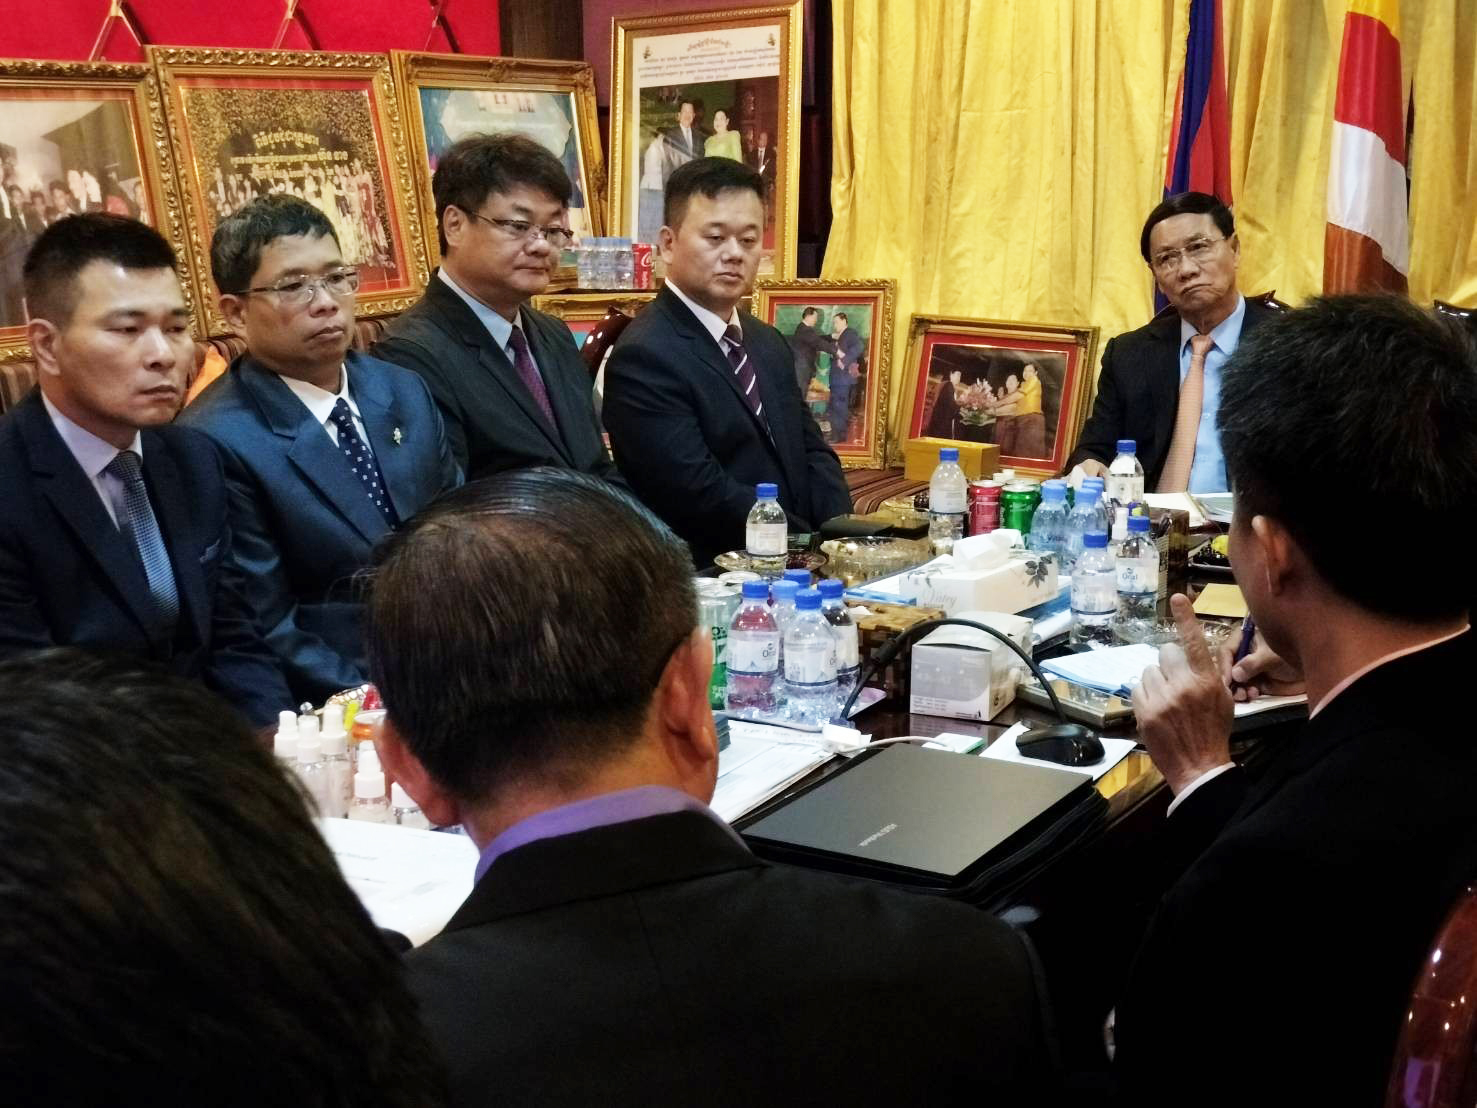 經 柬 埔 寨 王 國 內 閣 大 臣 會 議 一 致 決 議 ， 由 寰 宇 能 源 與 總 理 第 一 家 族 簽 署 合 作 協 議 書 。 